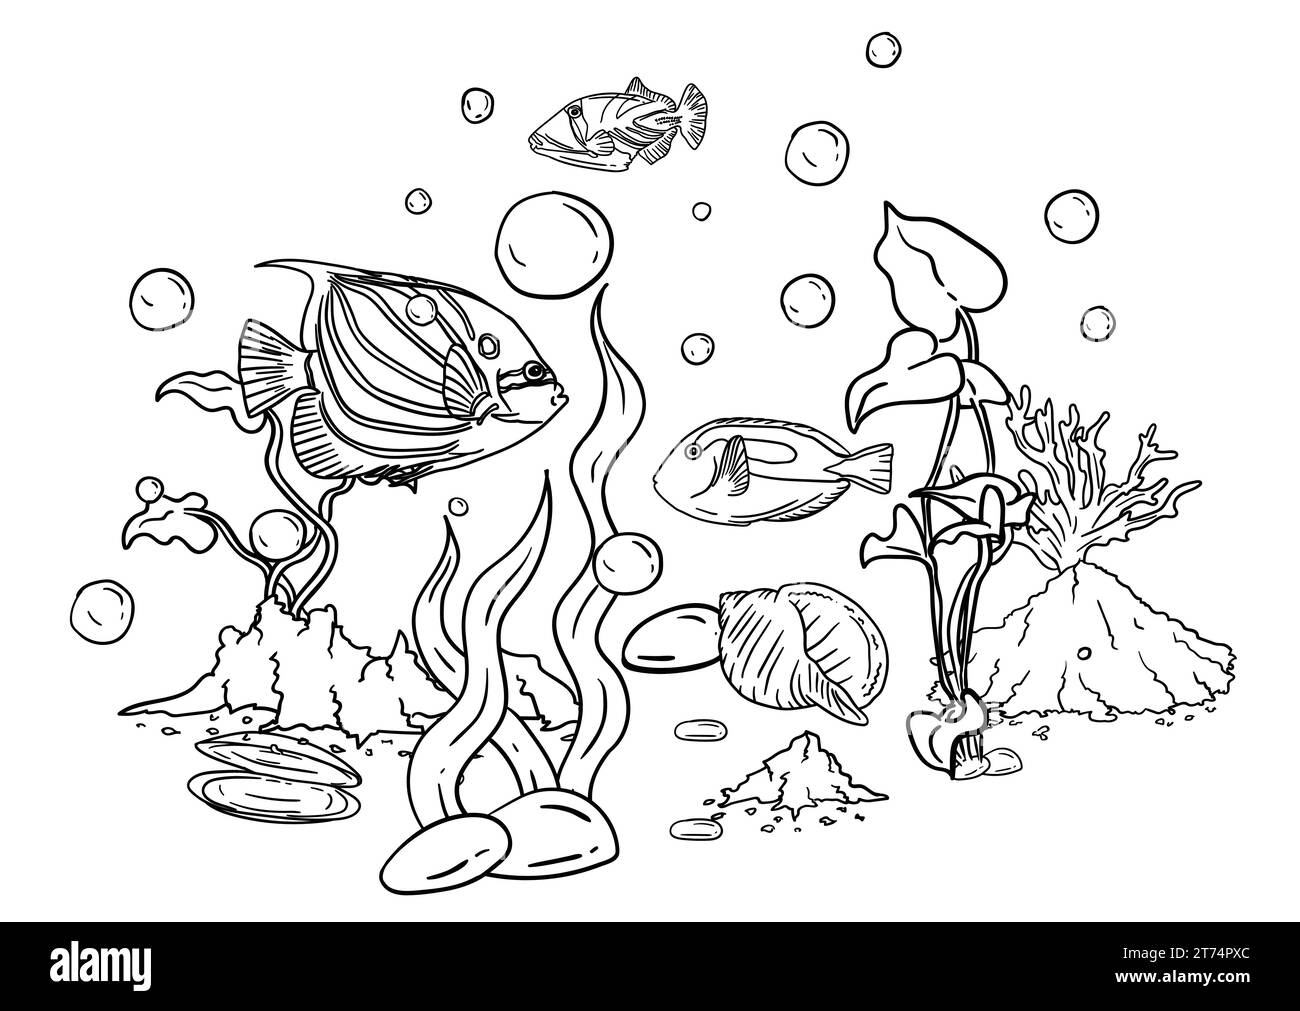 Vektor-Illustration eines Malbuchs der Unterwasserwelt mit schönen Fischen, Muscheln, Algen im Meer Stock Vektor